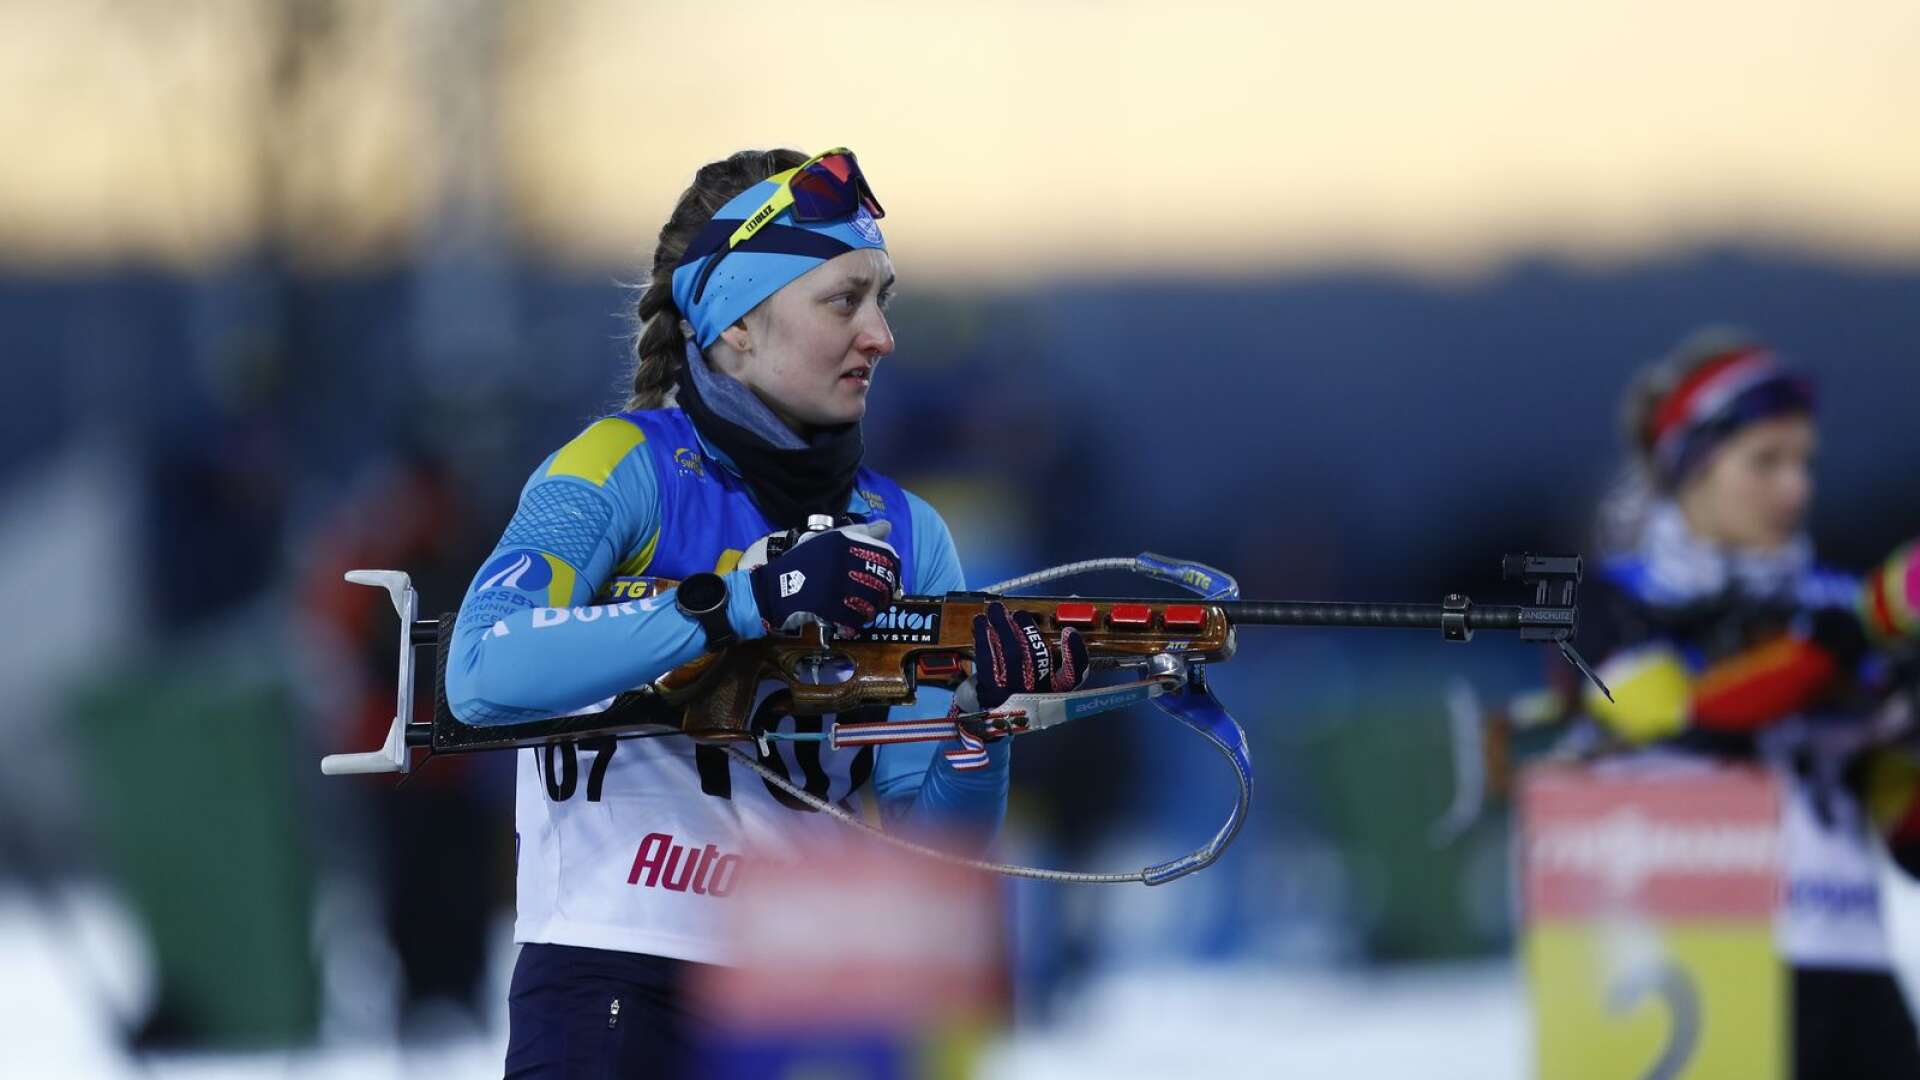 Emma Nilsson hoppas få stå på skjutvallen i både världscup och OS denna säsong. 